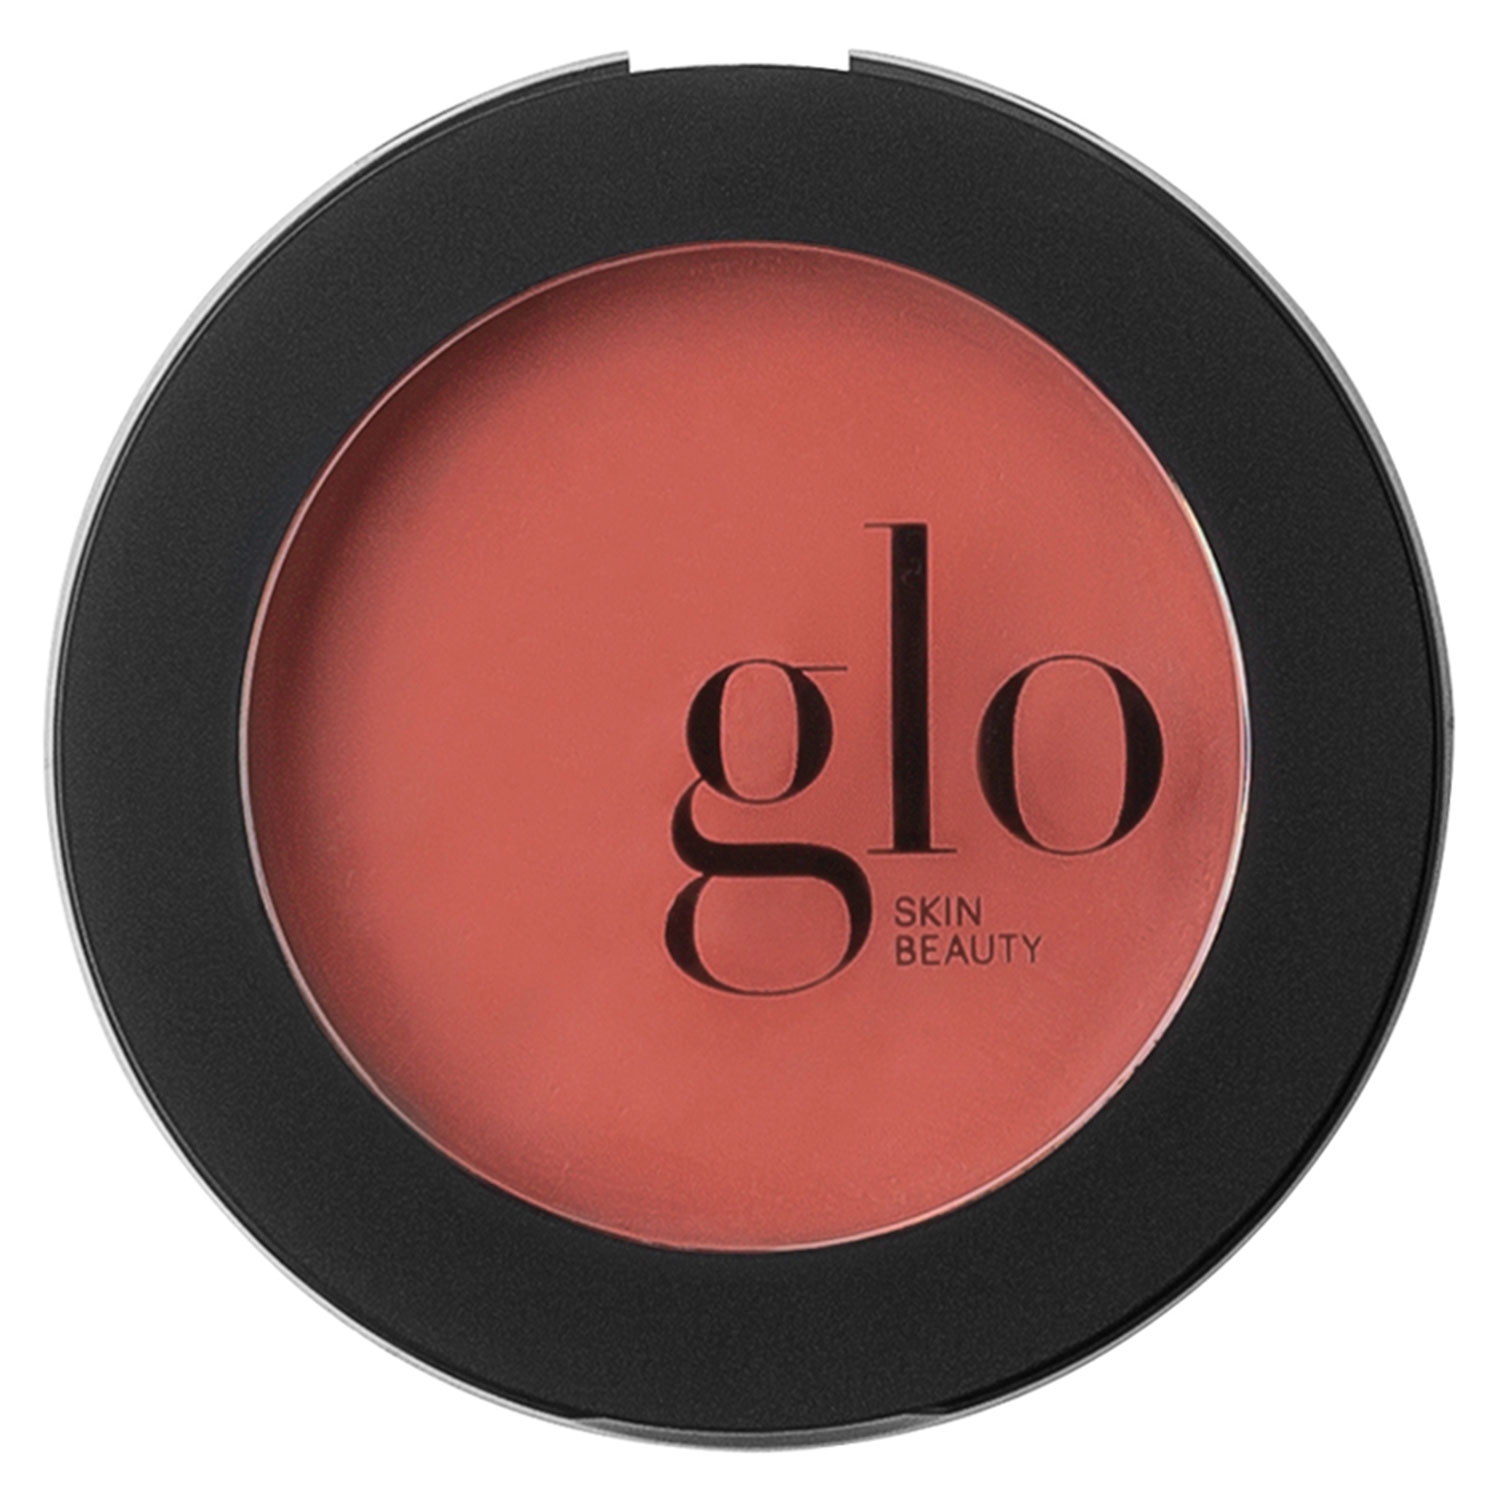 Produktbild von Glo Skin Beauty Blush - Cream Blush Guava